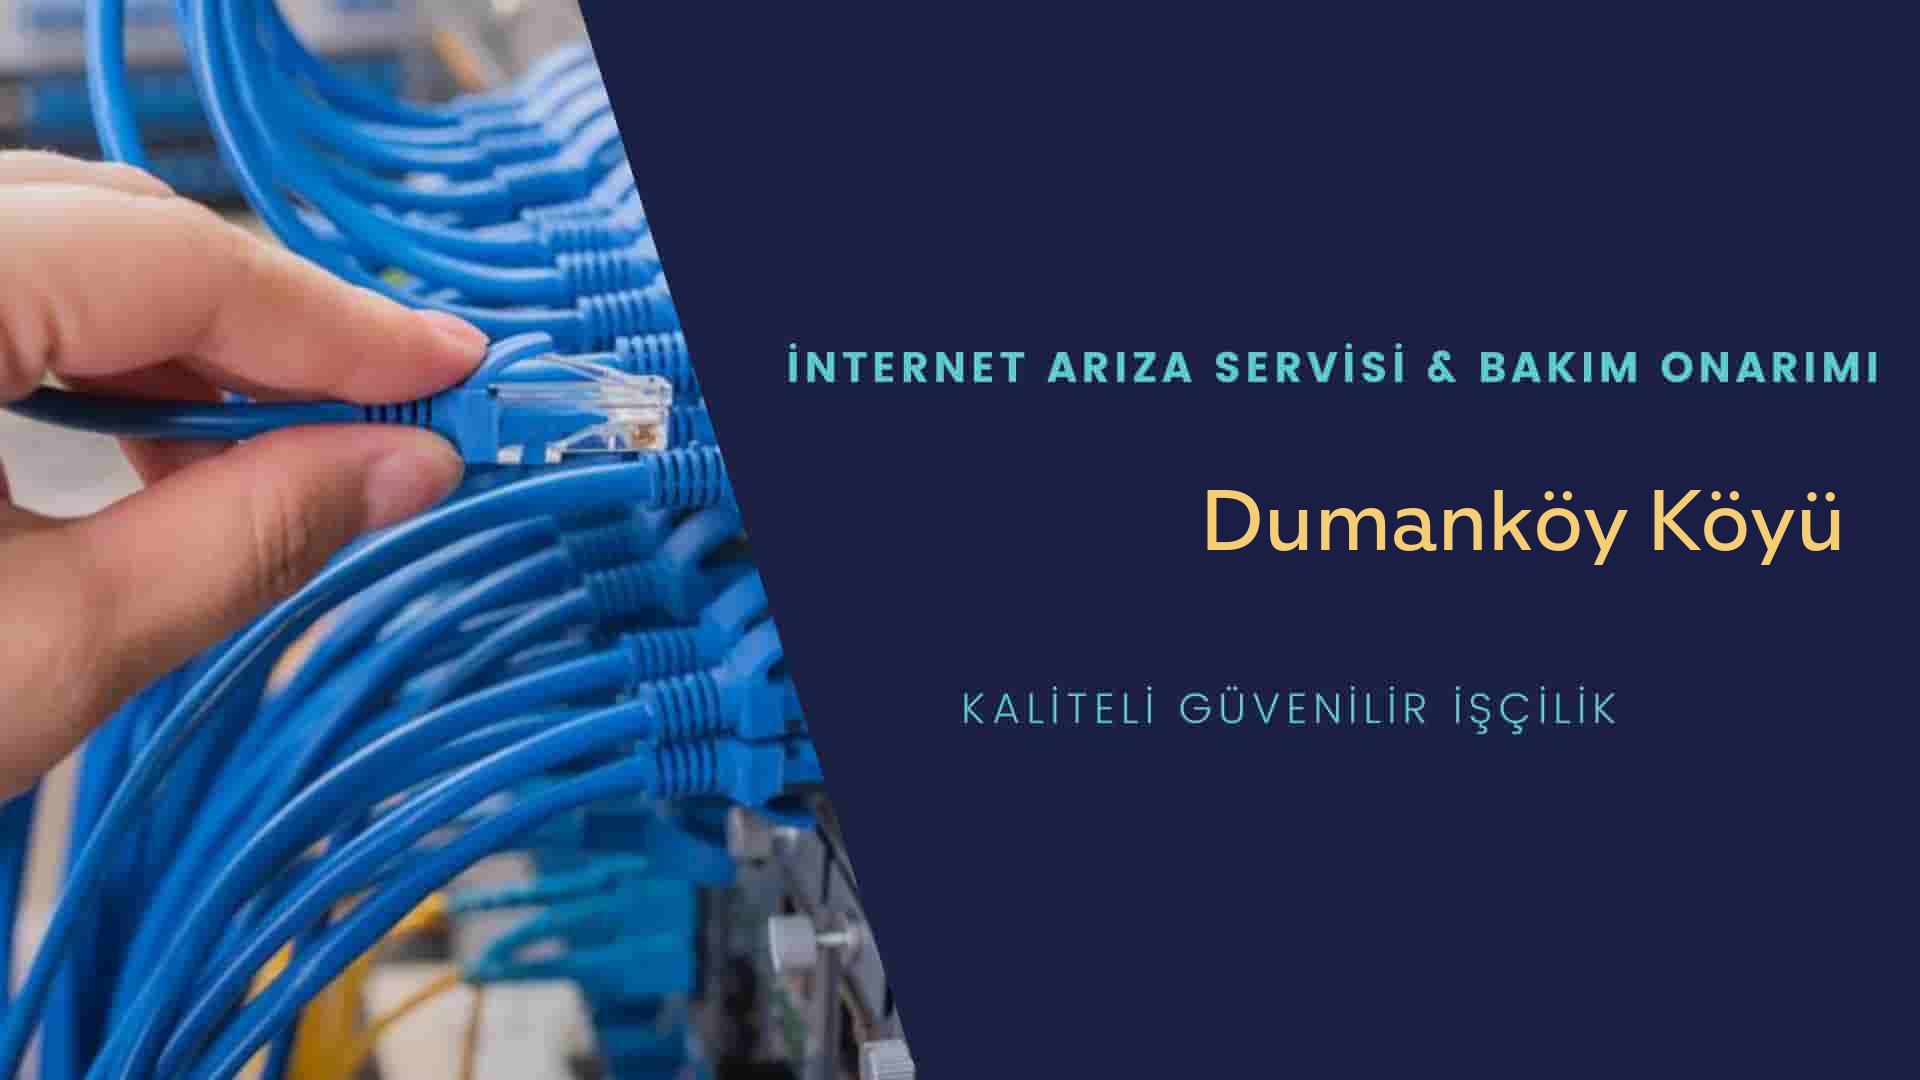 Dumanköy Köyü internet kablosu çekimi yapan yerler veya elektrikçiler mi? arıyorsunuz doğru yerdesiniz o zaman sizlere 7/24 yardımcı olacak profesyonel ustalarımız bir telefon kadar yakındır size.